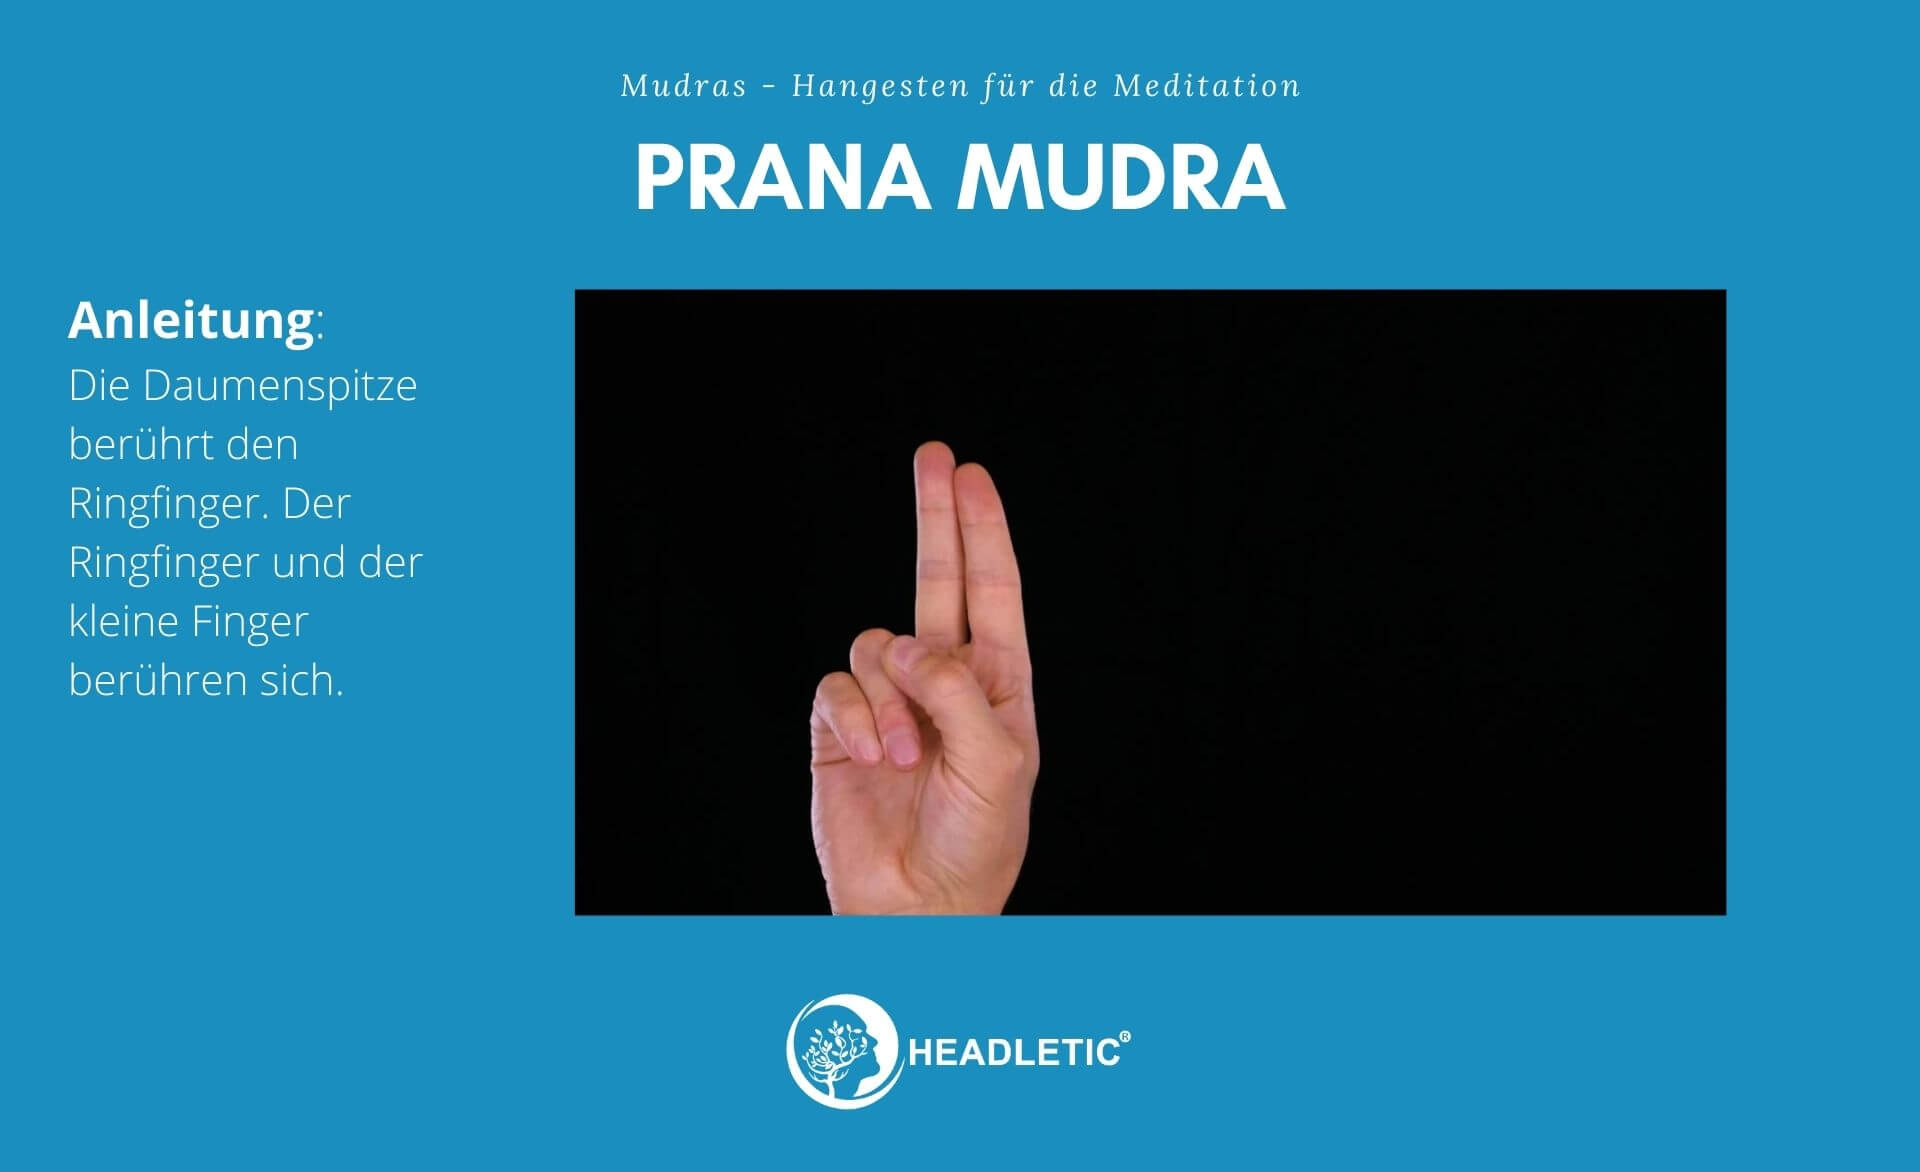 Prana Mudra - Handgesten für die Meditation